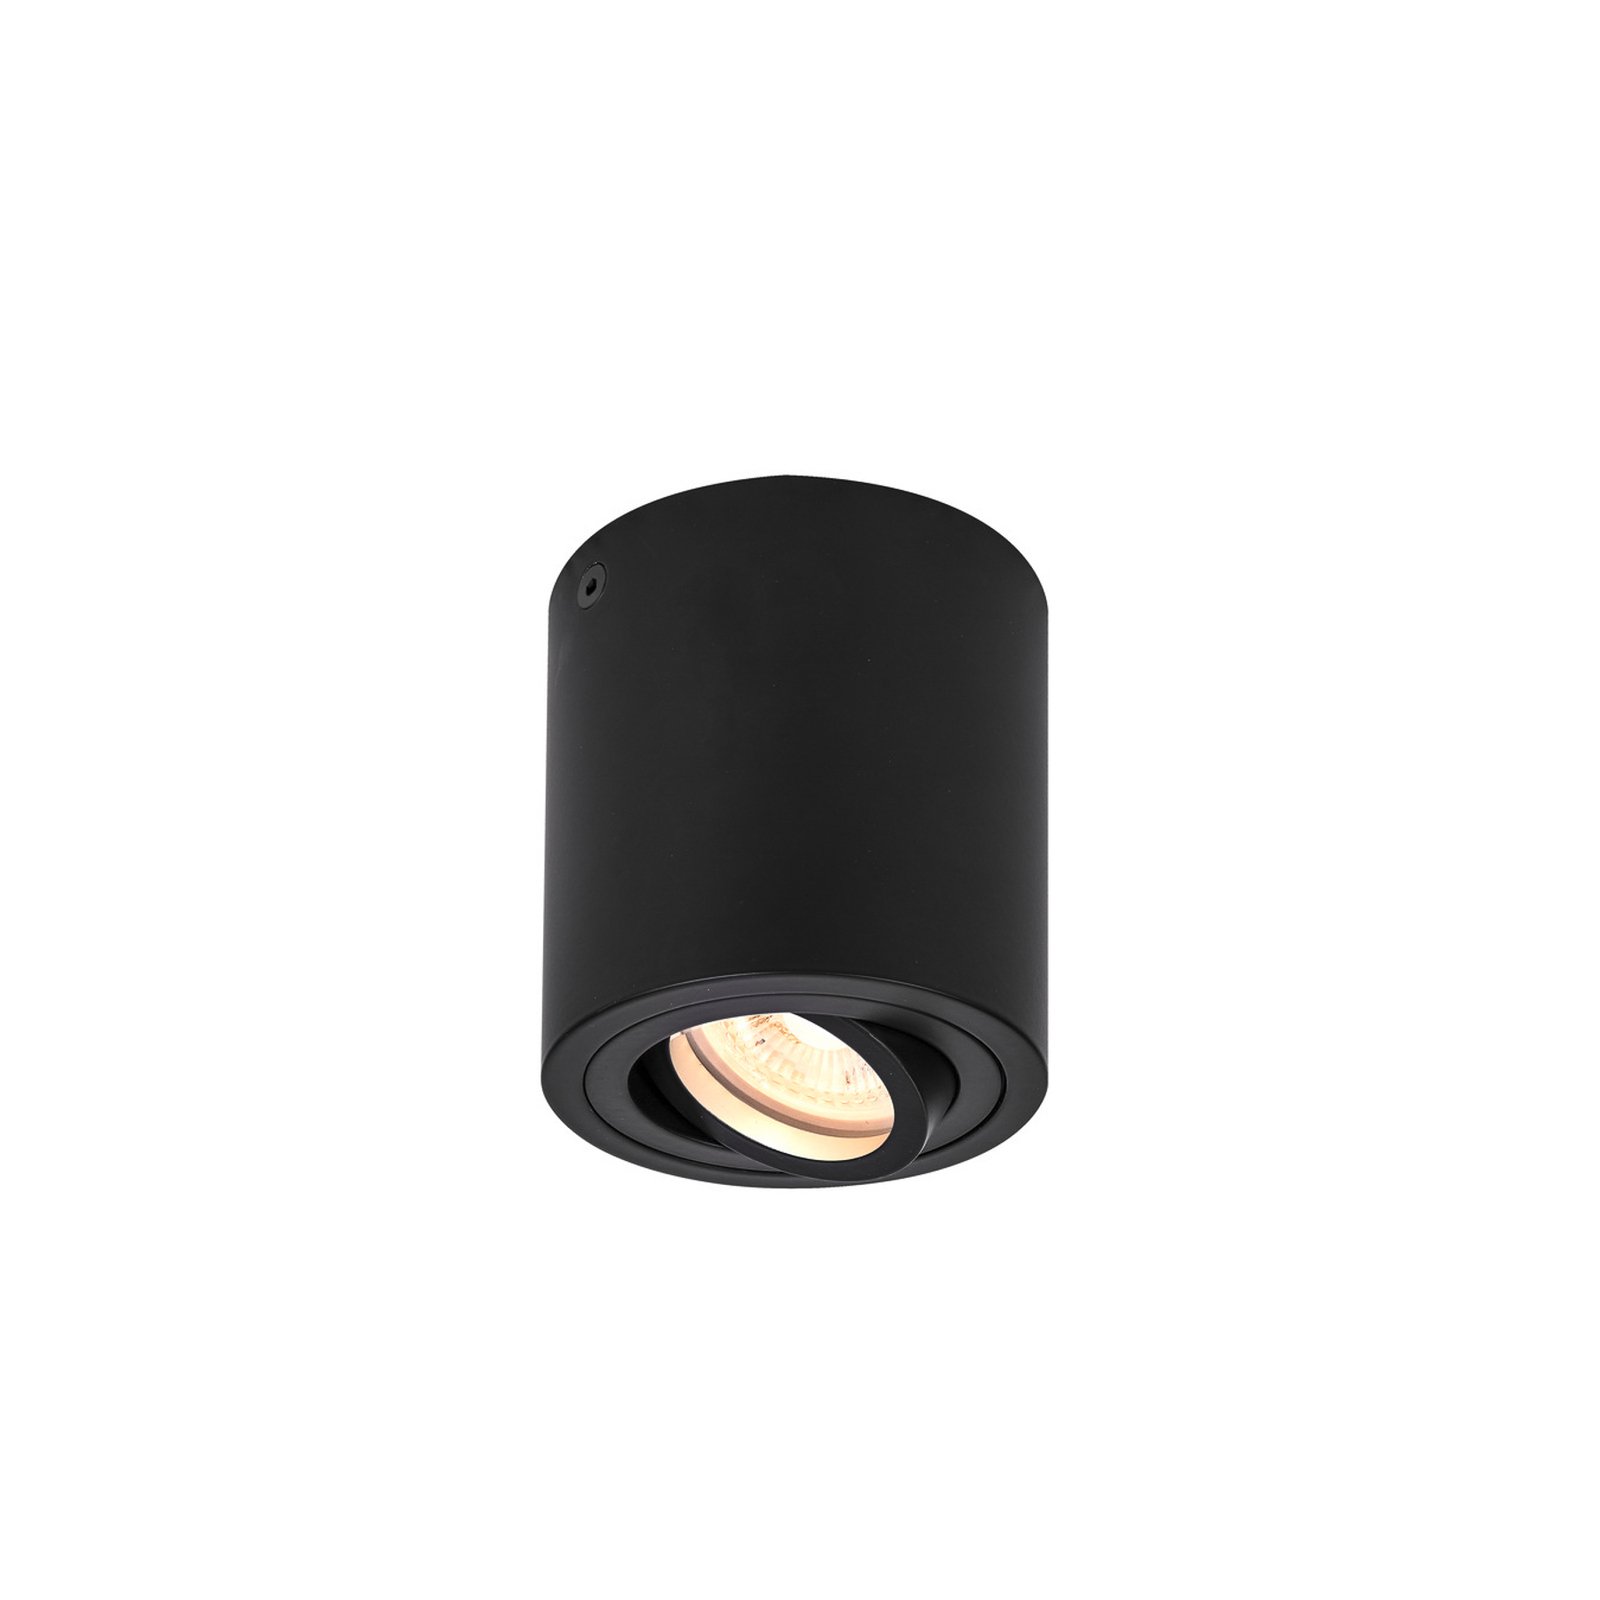 SLV Triledo ceiling lamp, black, aluminium, Ø 10 cm